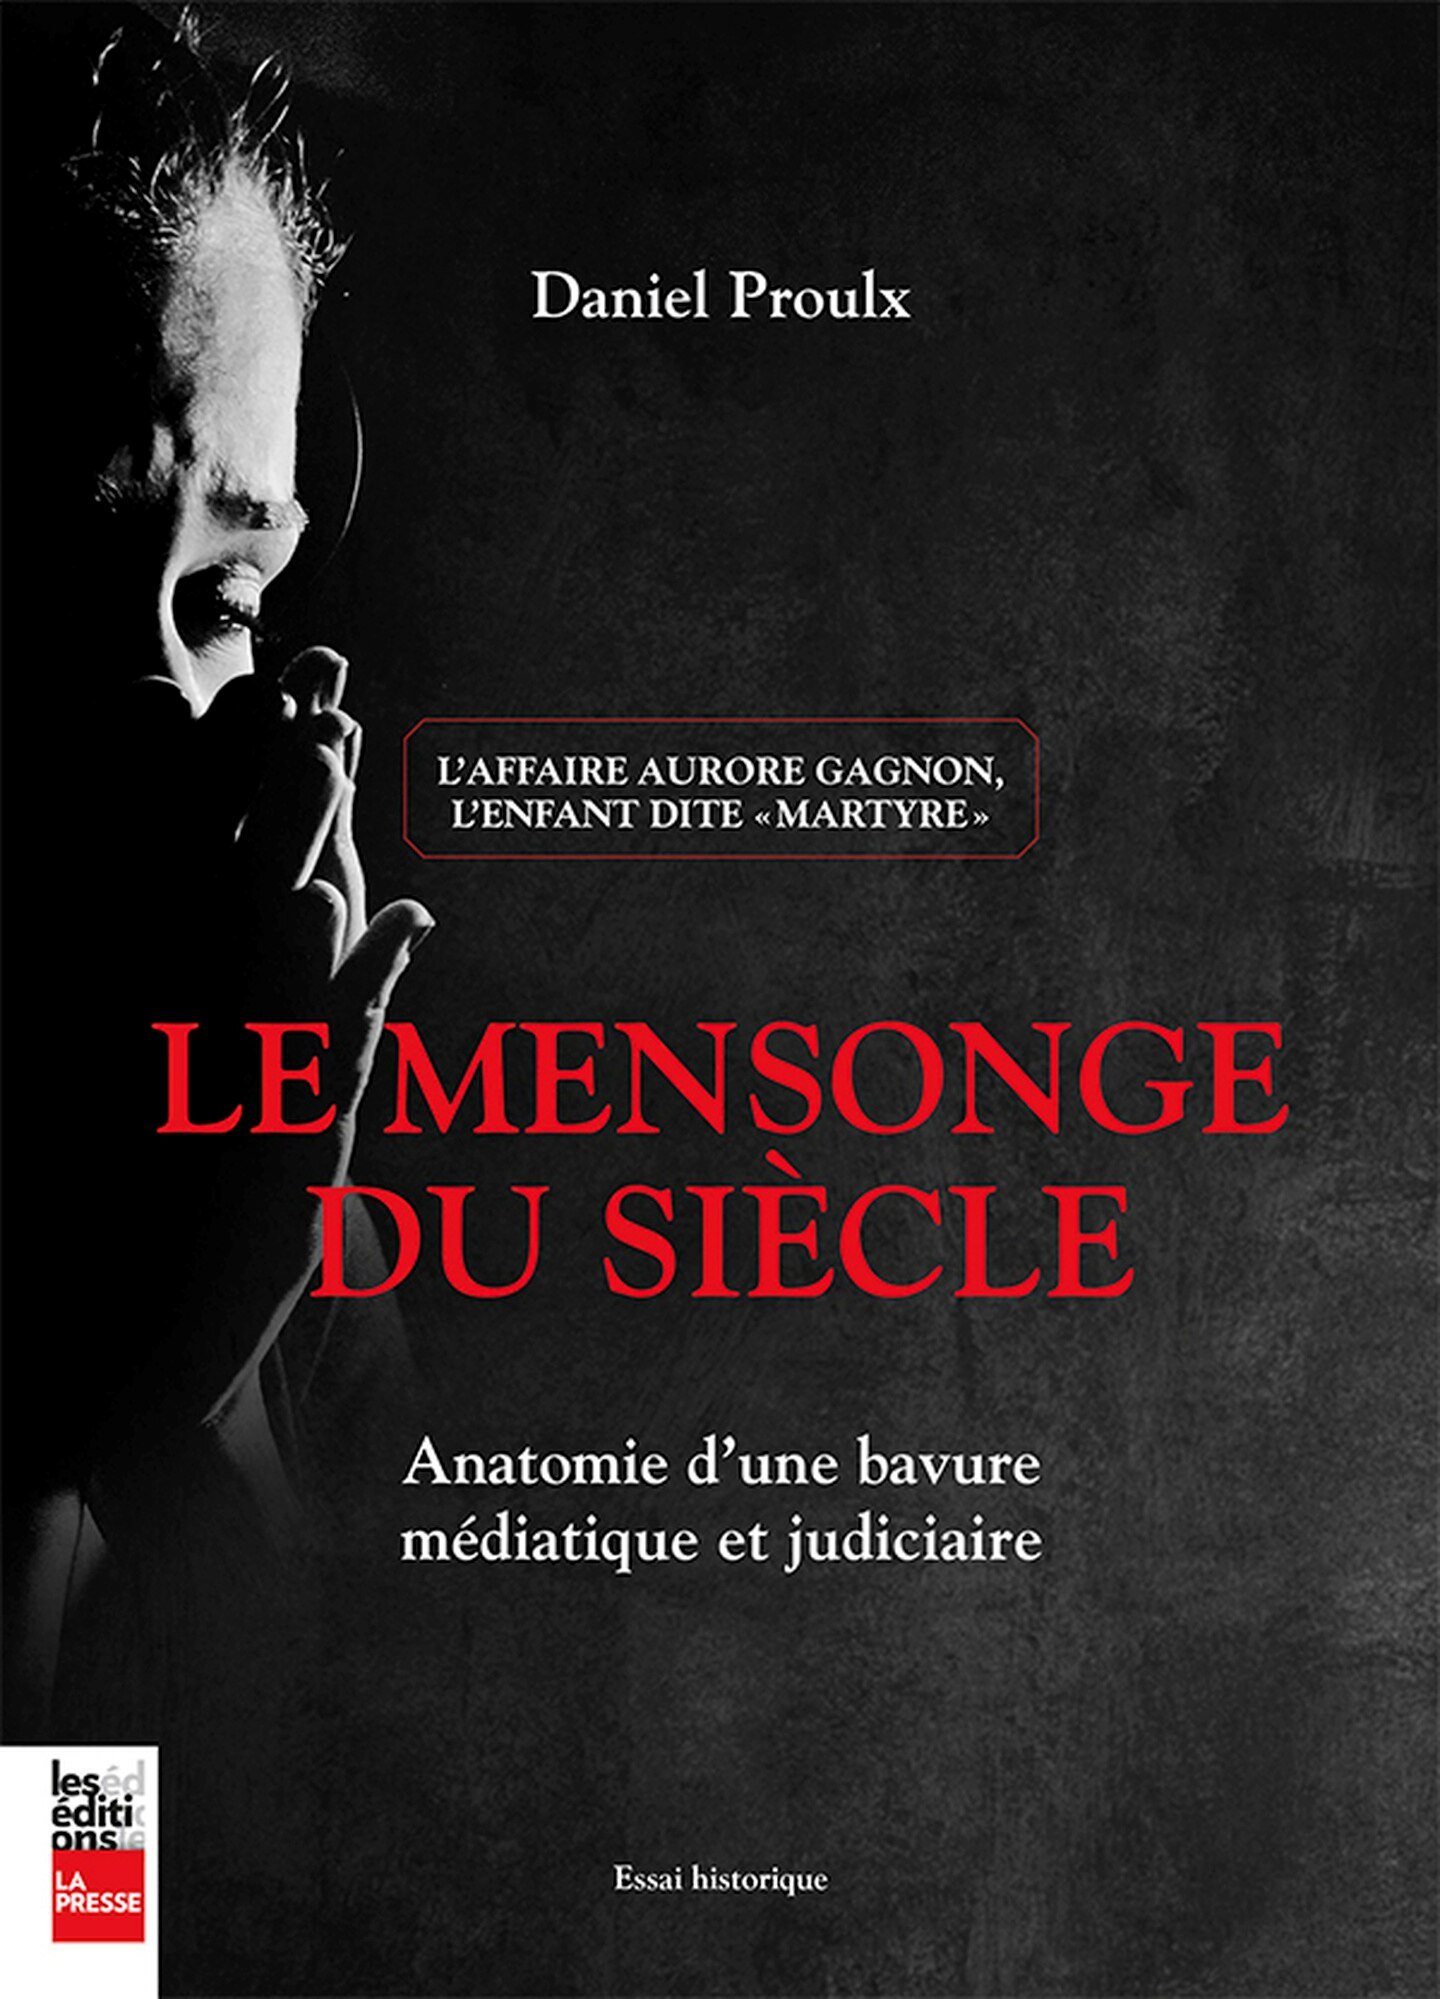  Aurore : Le mensonge du siècle Daniel Proulx Les éditions La presse 